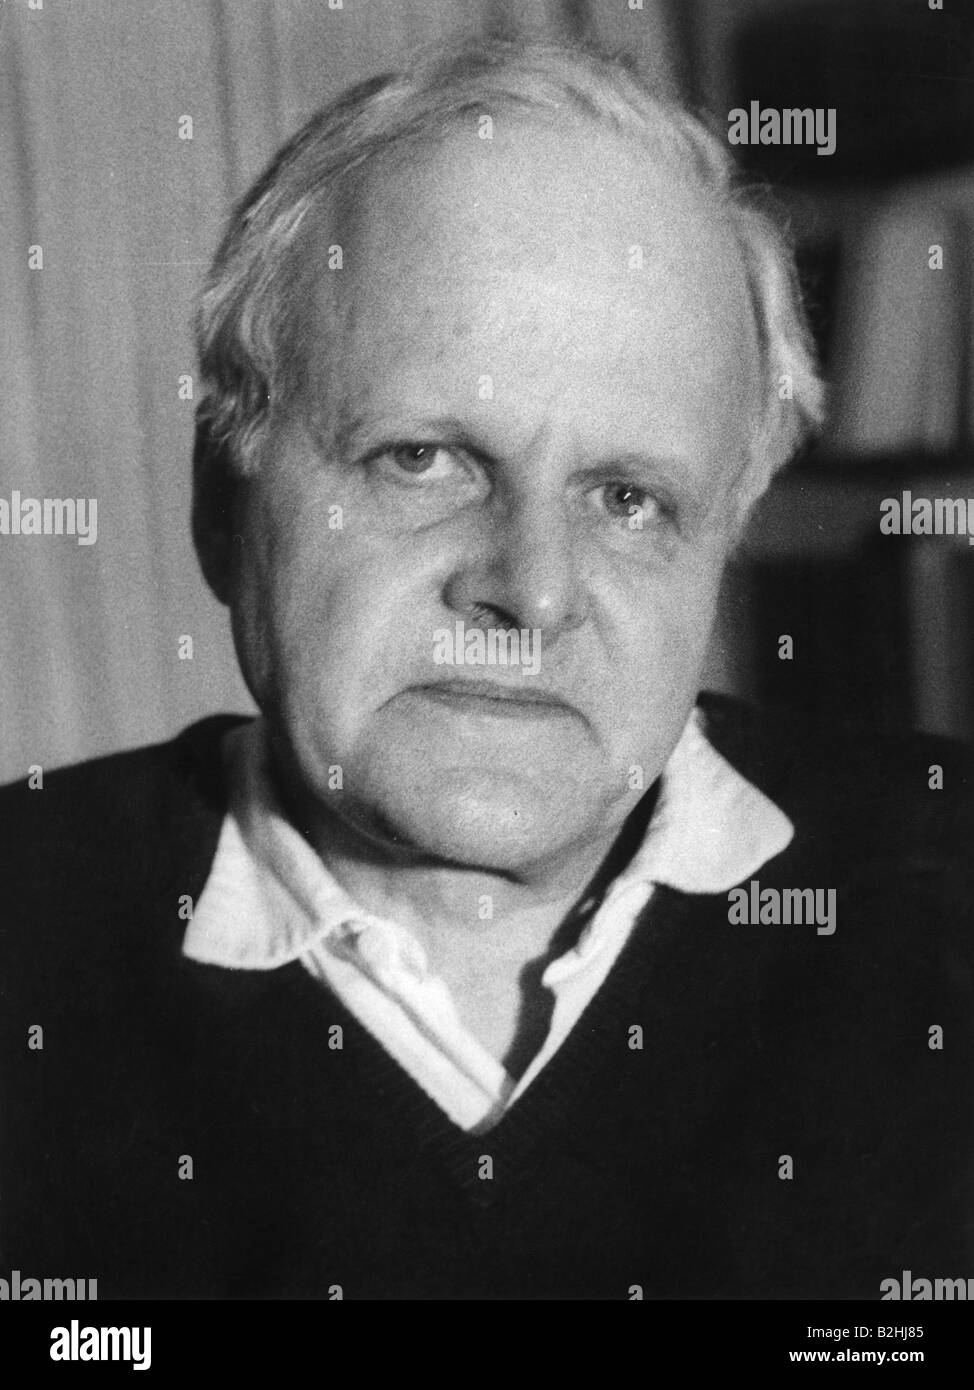 Weizsäcker, Carl Friedrich von, 28.6.1912 - 28.4.2007, scienziato tedesco (fisica) e filosofo, ritratto, 1971, Foto Stock